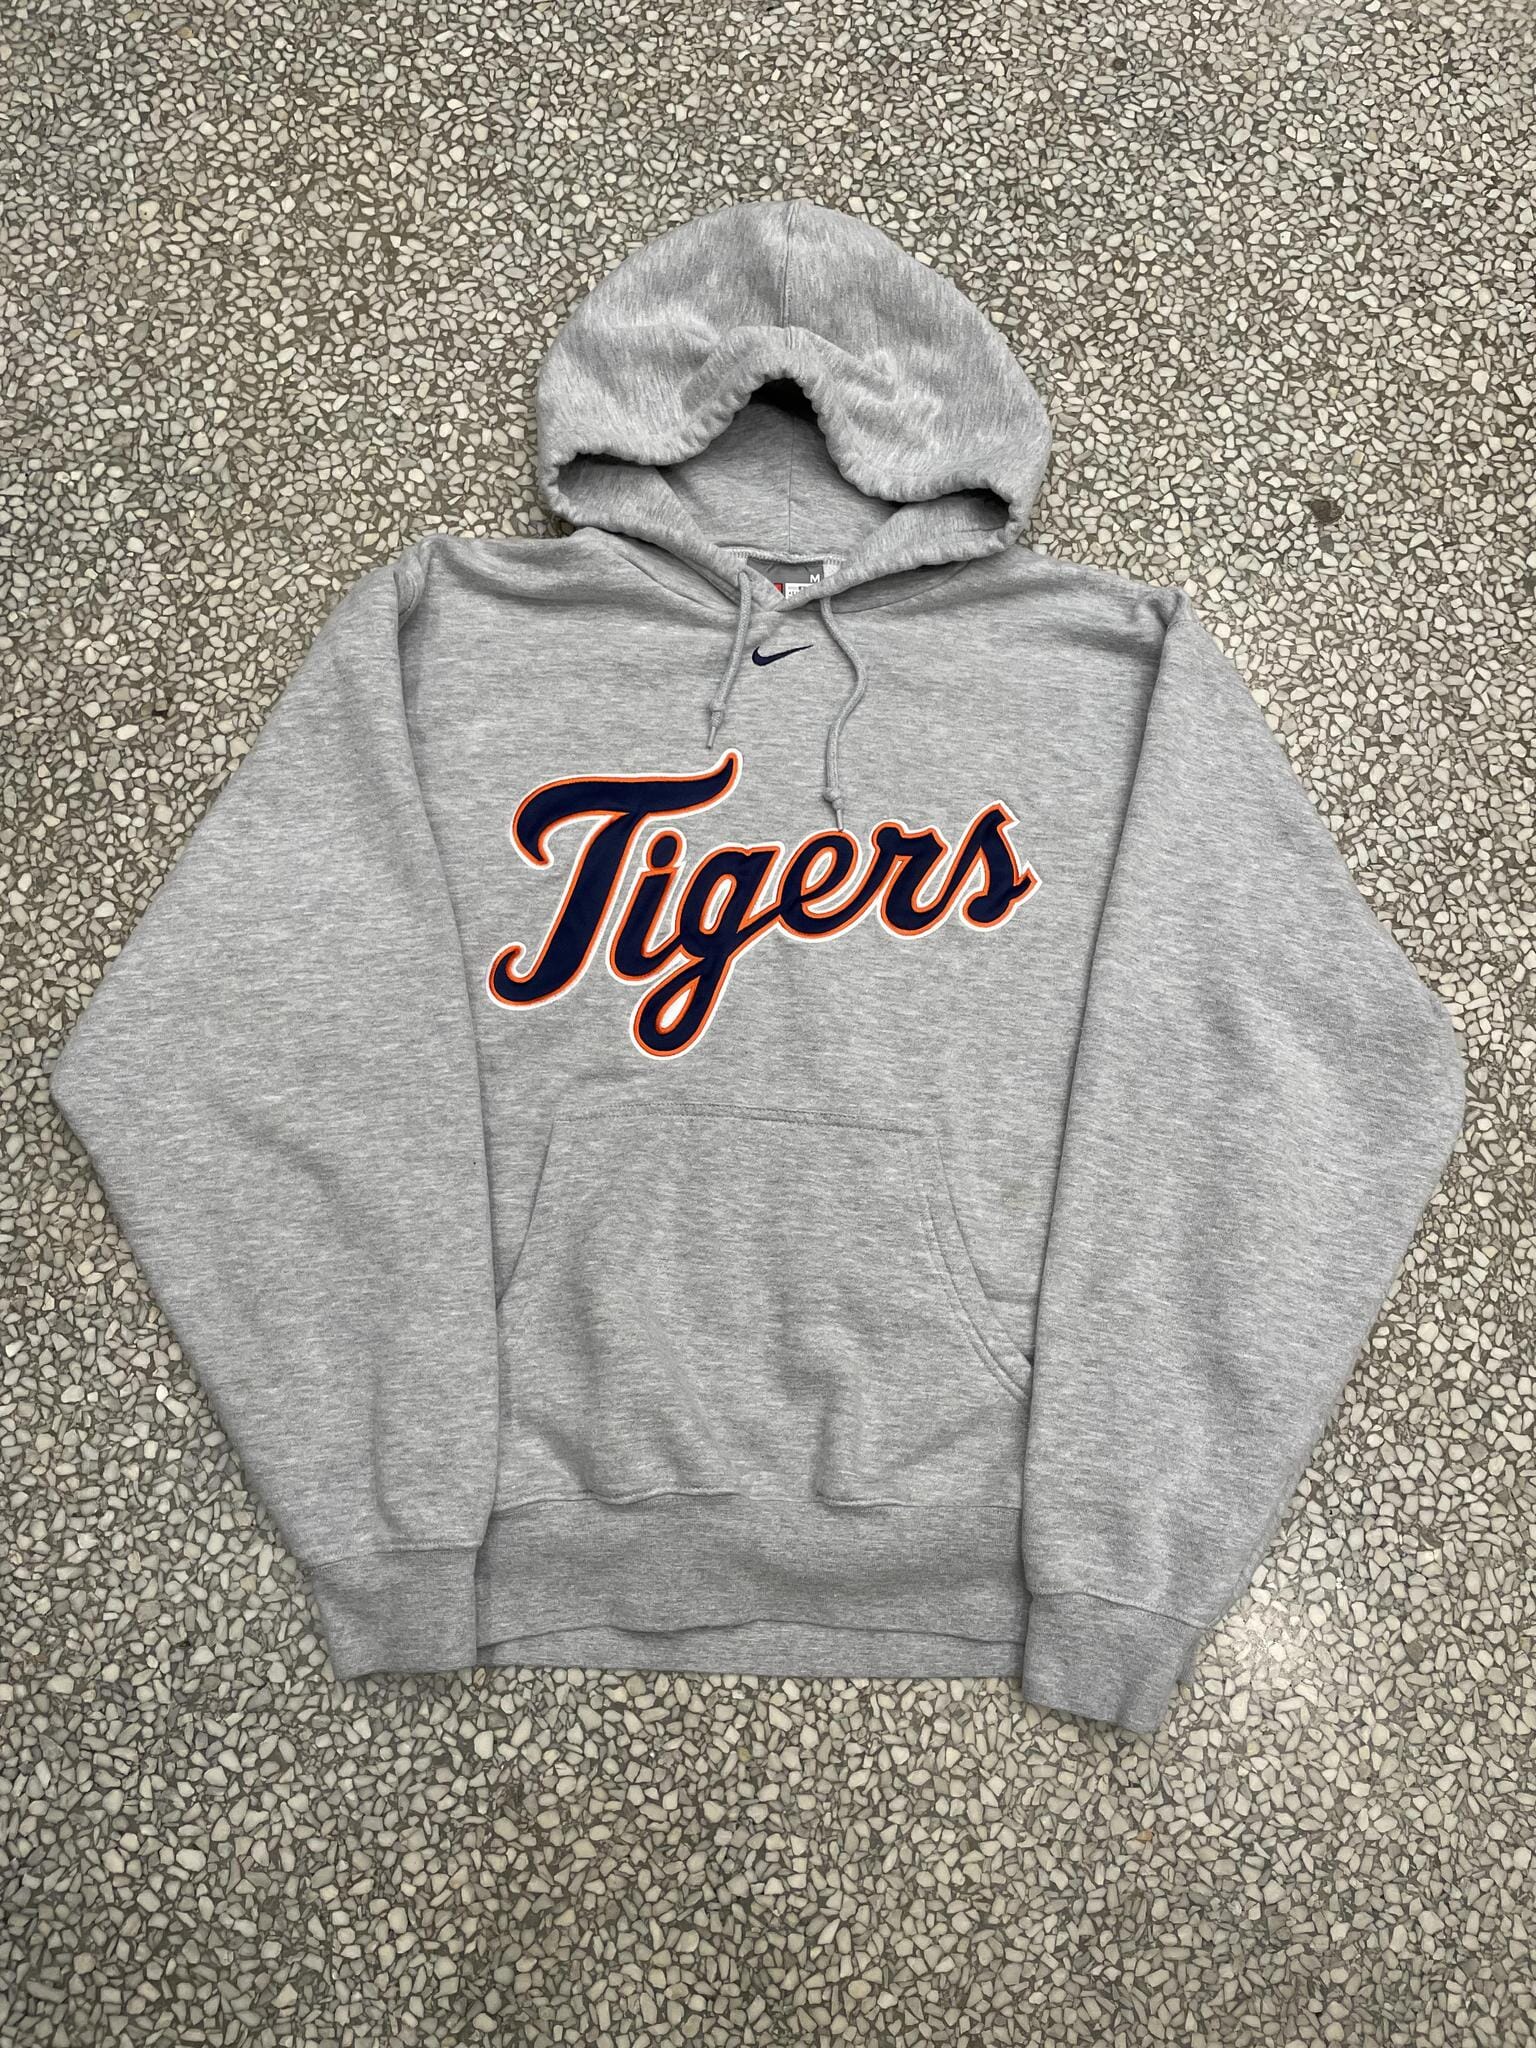 Detroit Tigers V-Neck Pullover Jacket - Vintage Detroit Collection